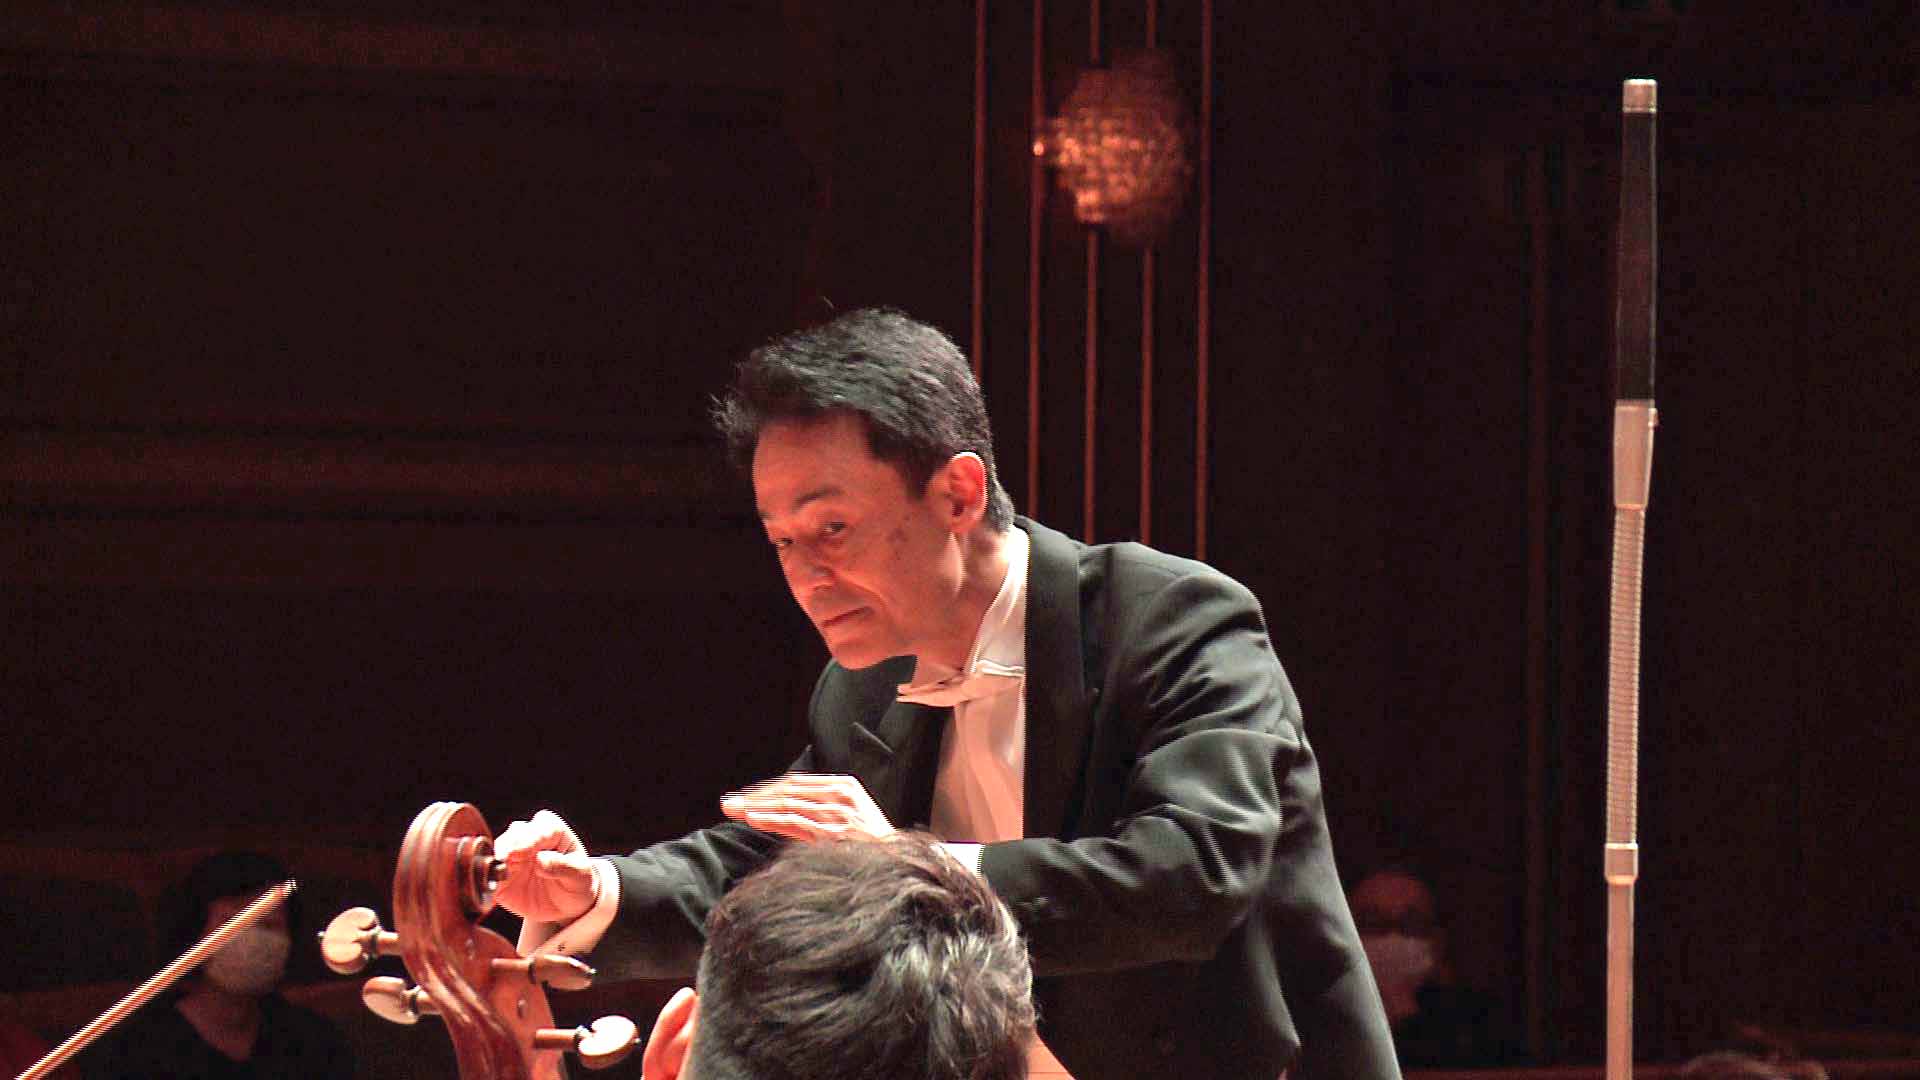 指揮：阪哲朗
紀尾井ホール室内管弦楽団
モーツァルト：交響曲第36番ハ長調《リンツ》K.425
Tetsuro Ban, Conductor
Kioi Hall Chamber Orchestra Tokyo
W. A. Mozart: Symphony No. 36 in C Major, K. 425, 